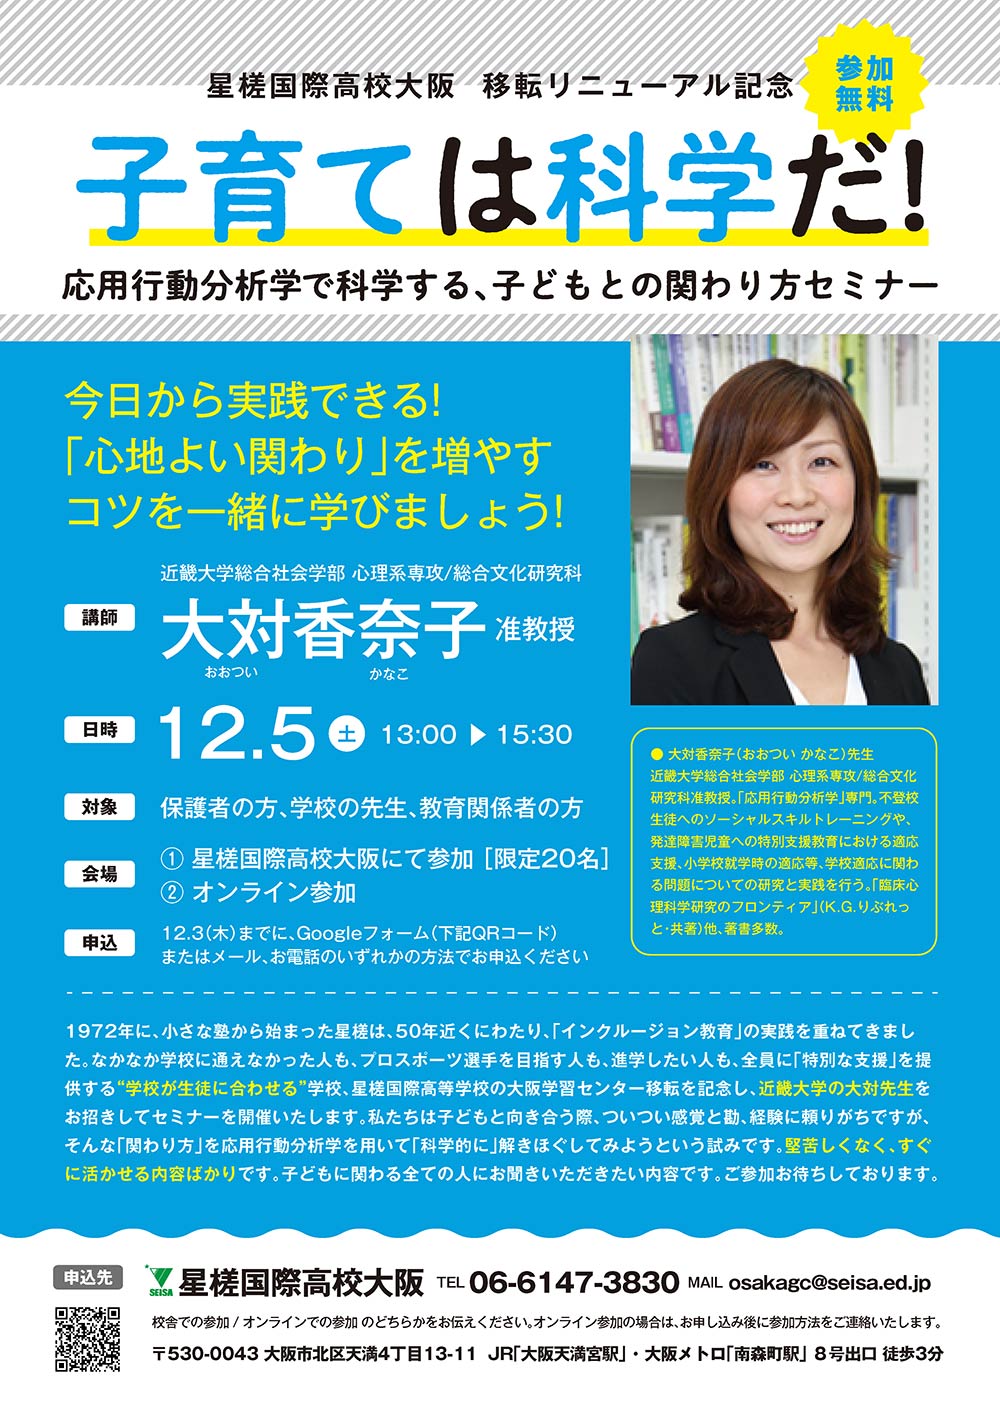 星槎国際高校大阪（星槎大学大阪）リニューアル記念セミナー「子育ては化学だ！応用行動分析学で科学する、子供との関わり方」セミナーを開催